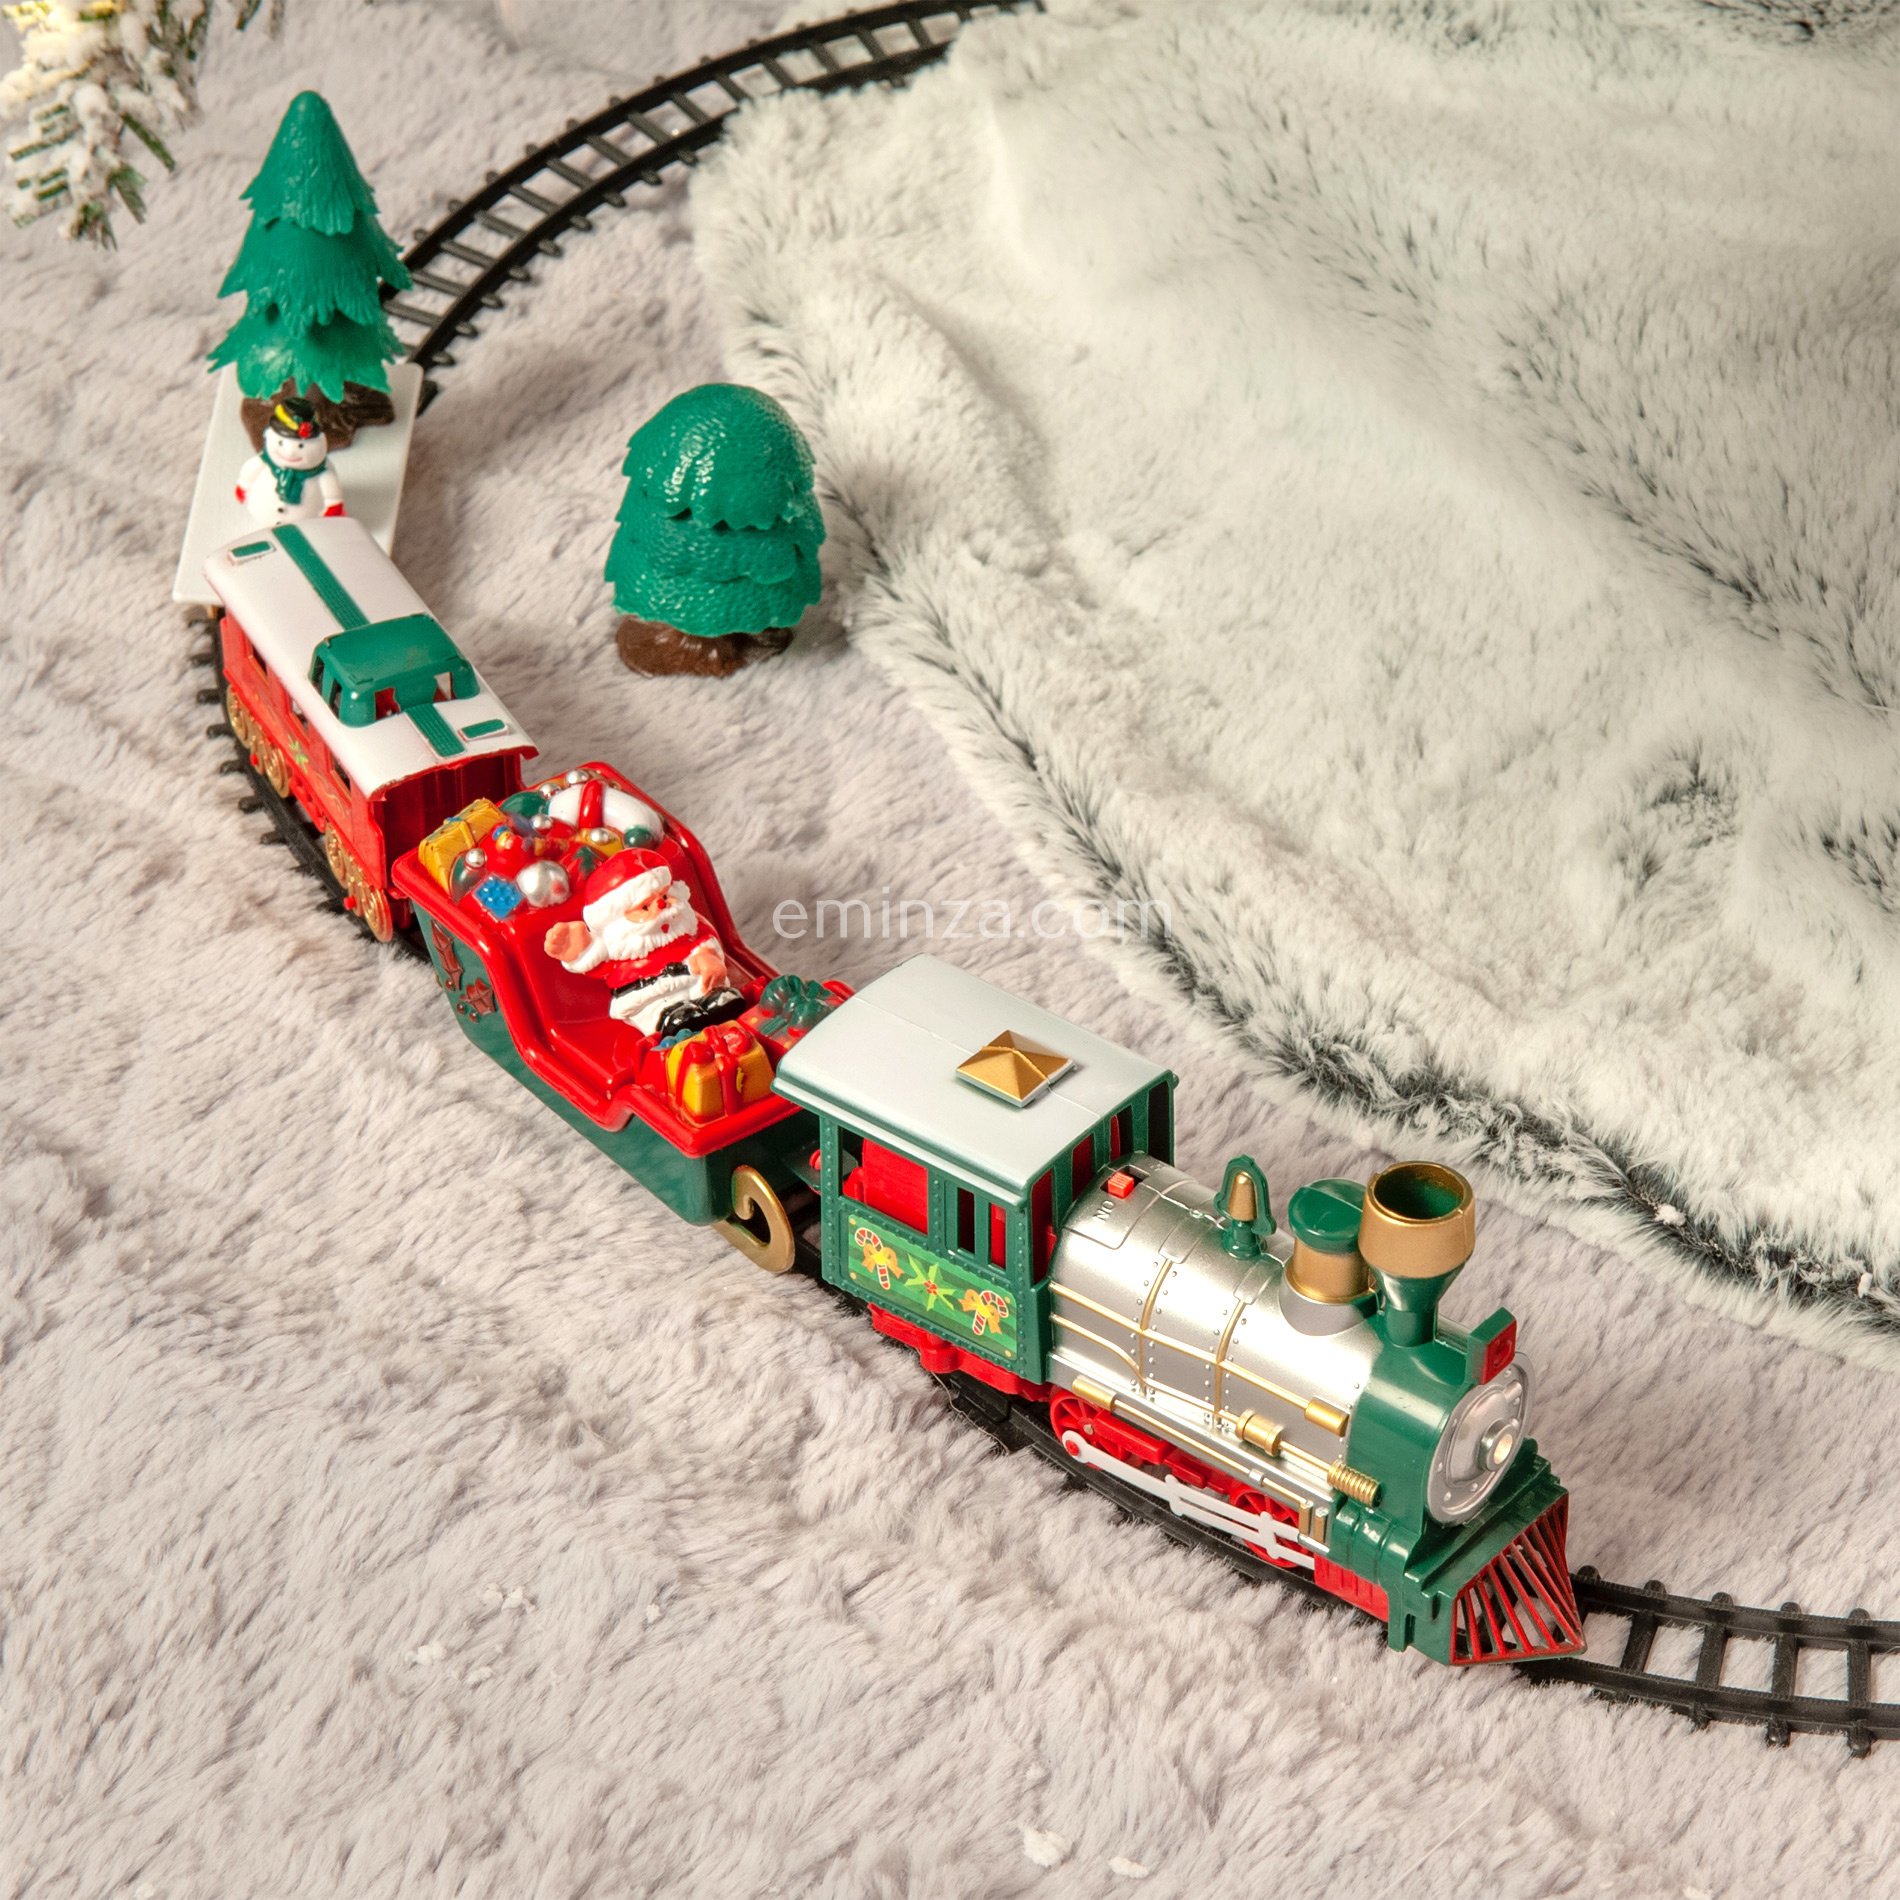 Train Electrique Noel,Train Jouet pour Enfants Train de Noël à Pile